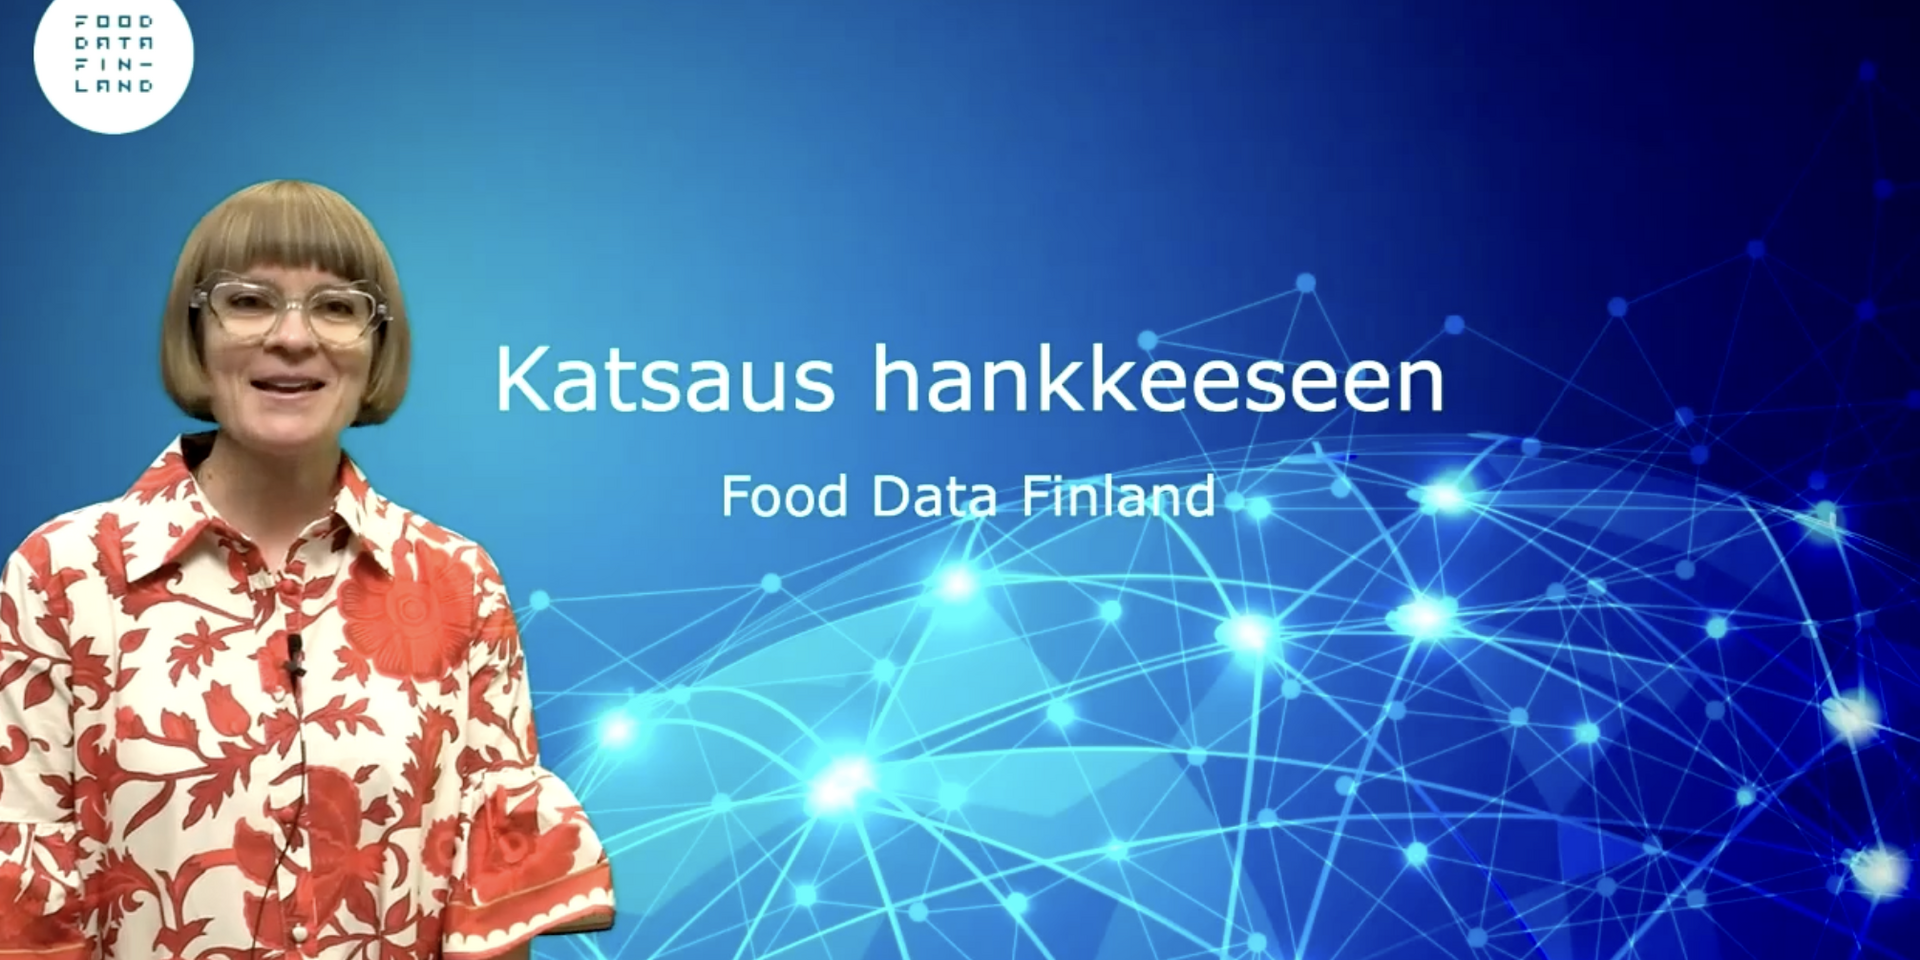 Food Data Finland - Katsaus hankkeeseen